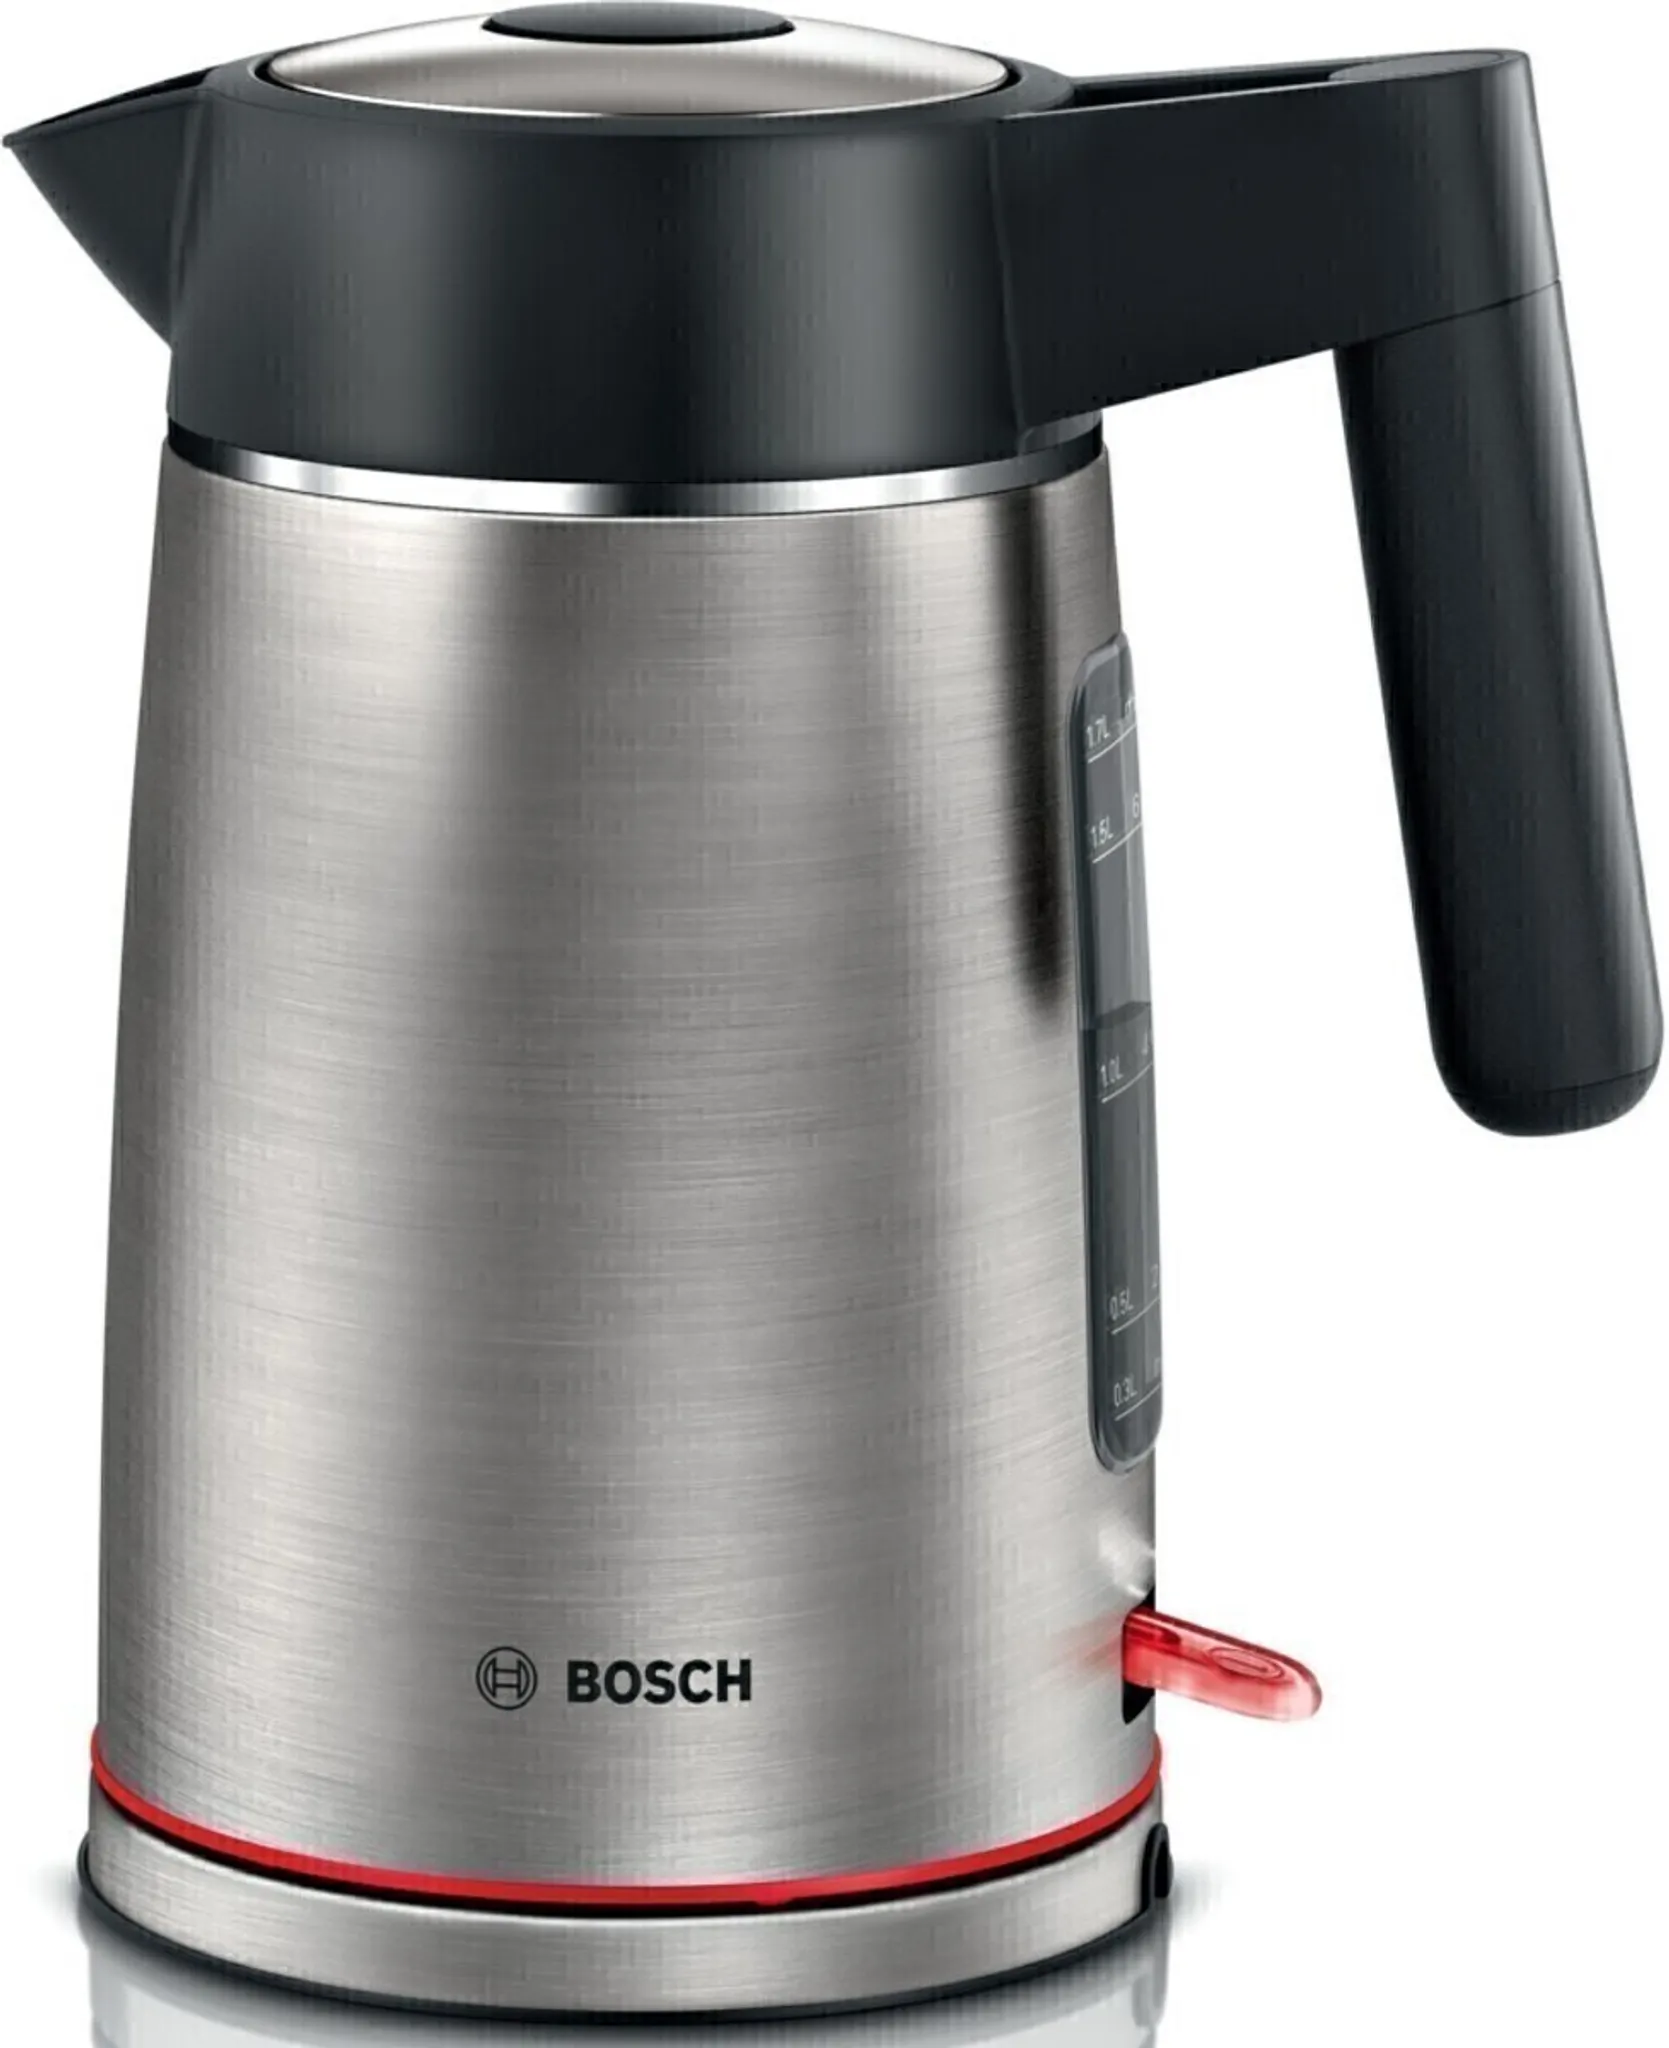 Bosch SDA Wasserkocher TWK6M480 eds